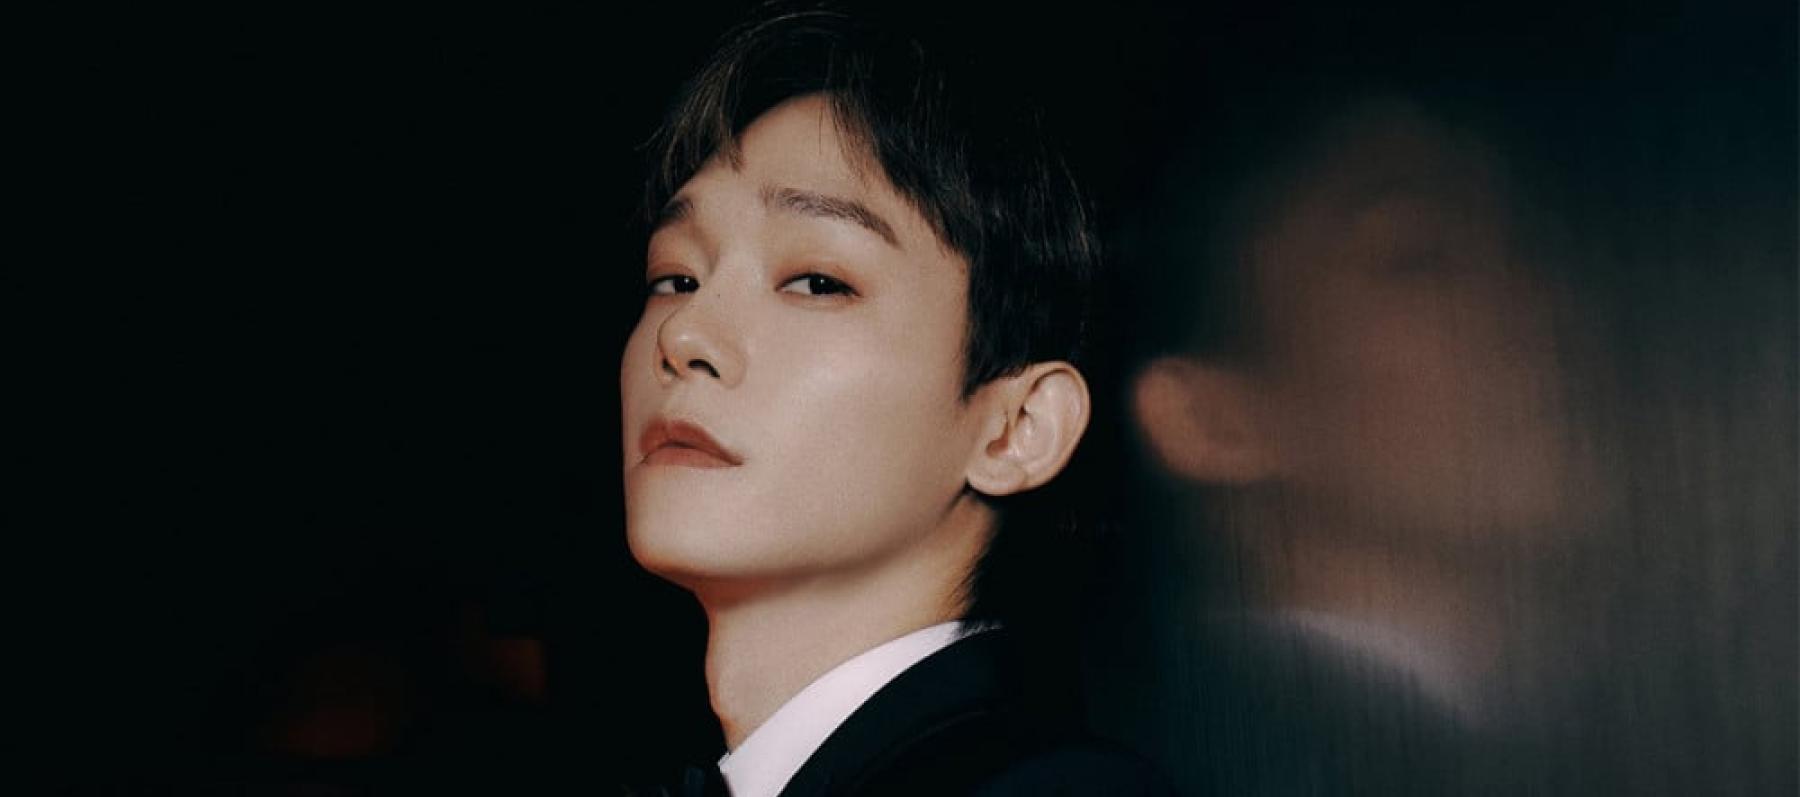 Chen - عضو في فرقة EXO